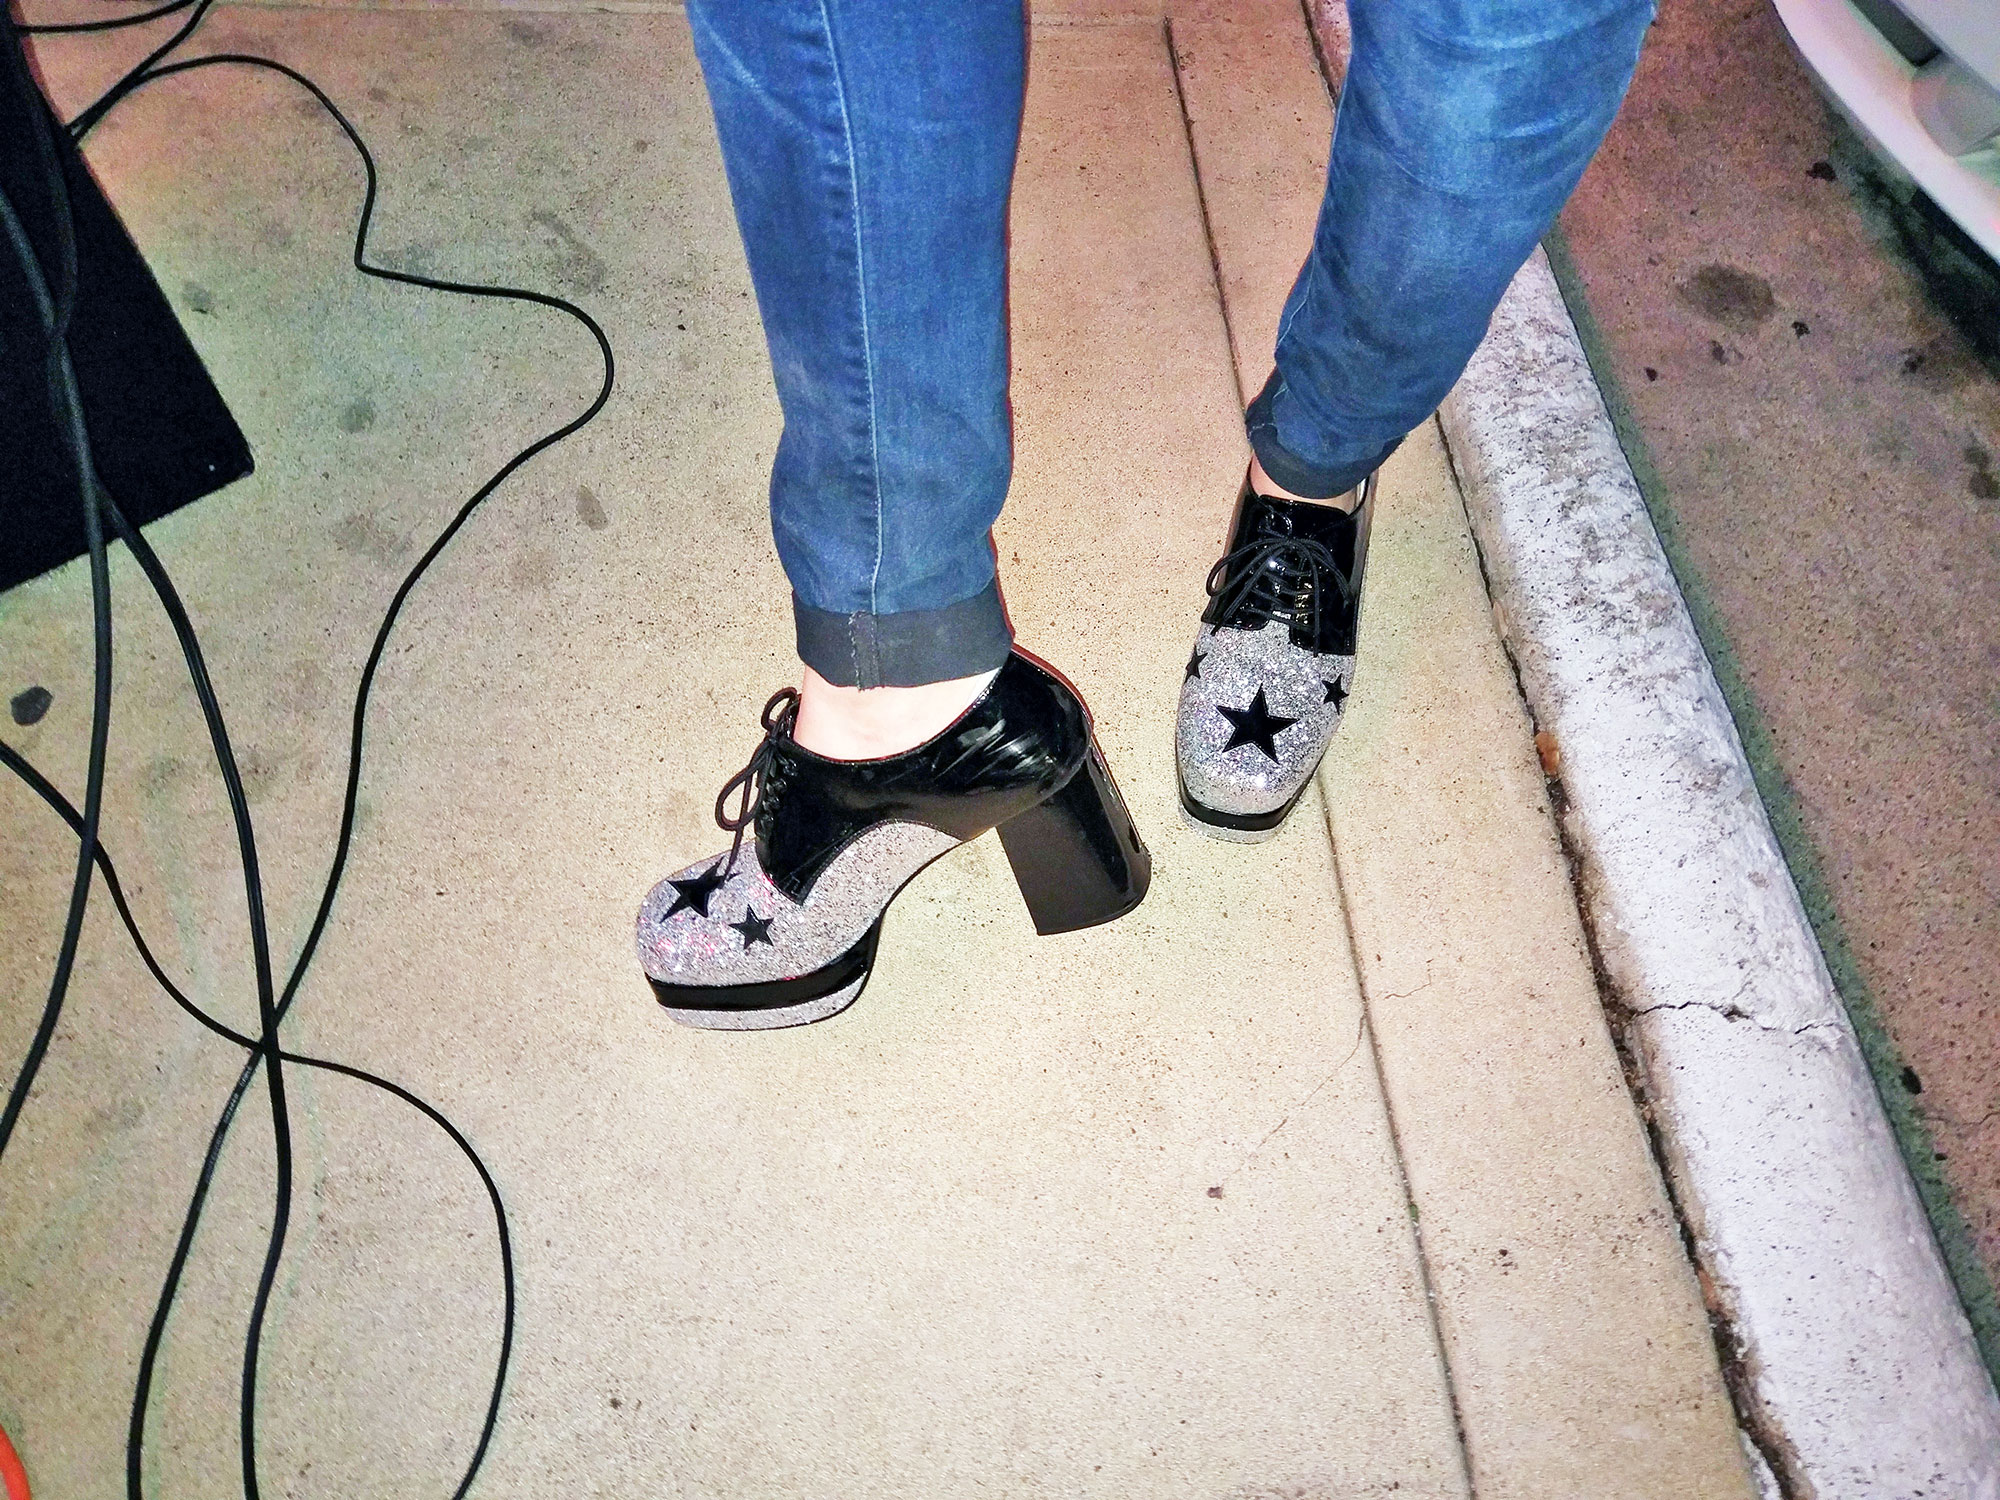 The street dancer's platform shoes.